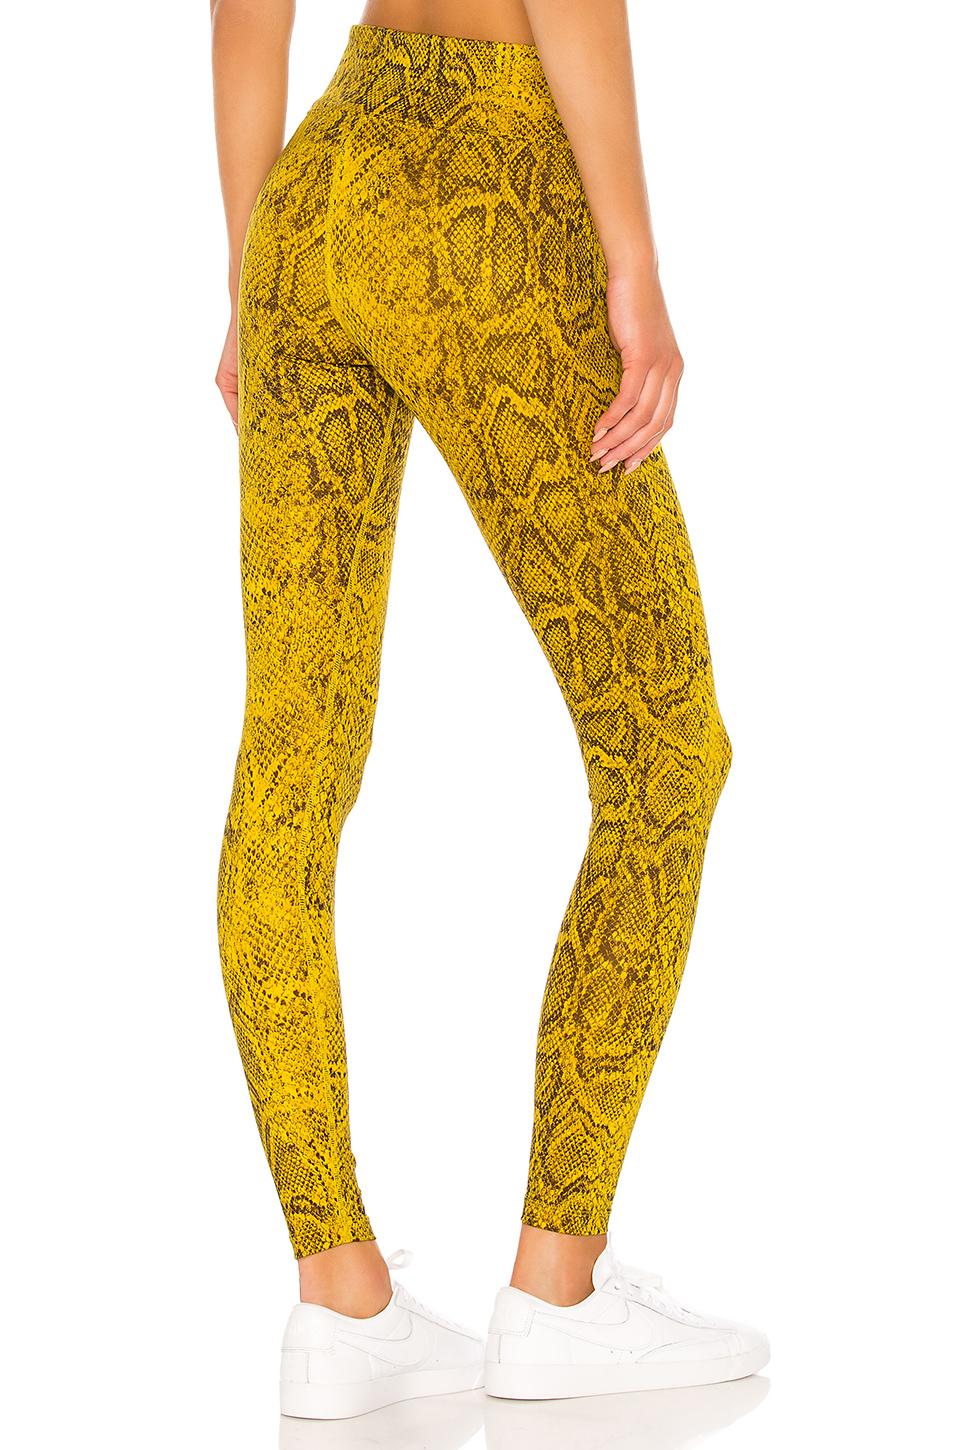 nike yellow python leggings